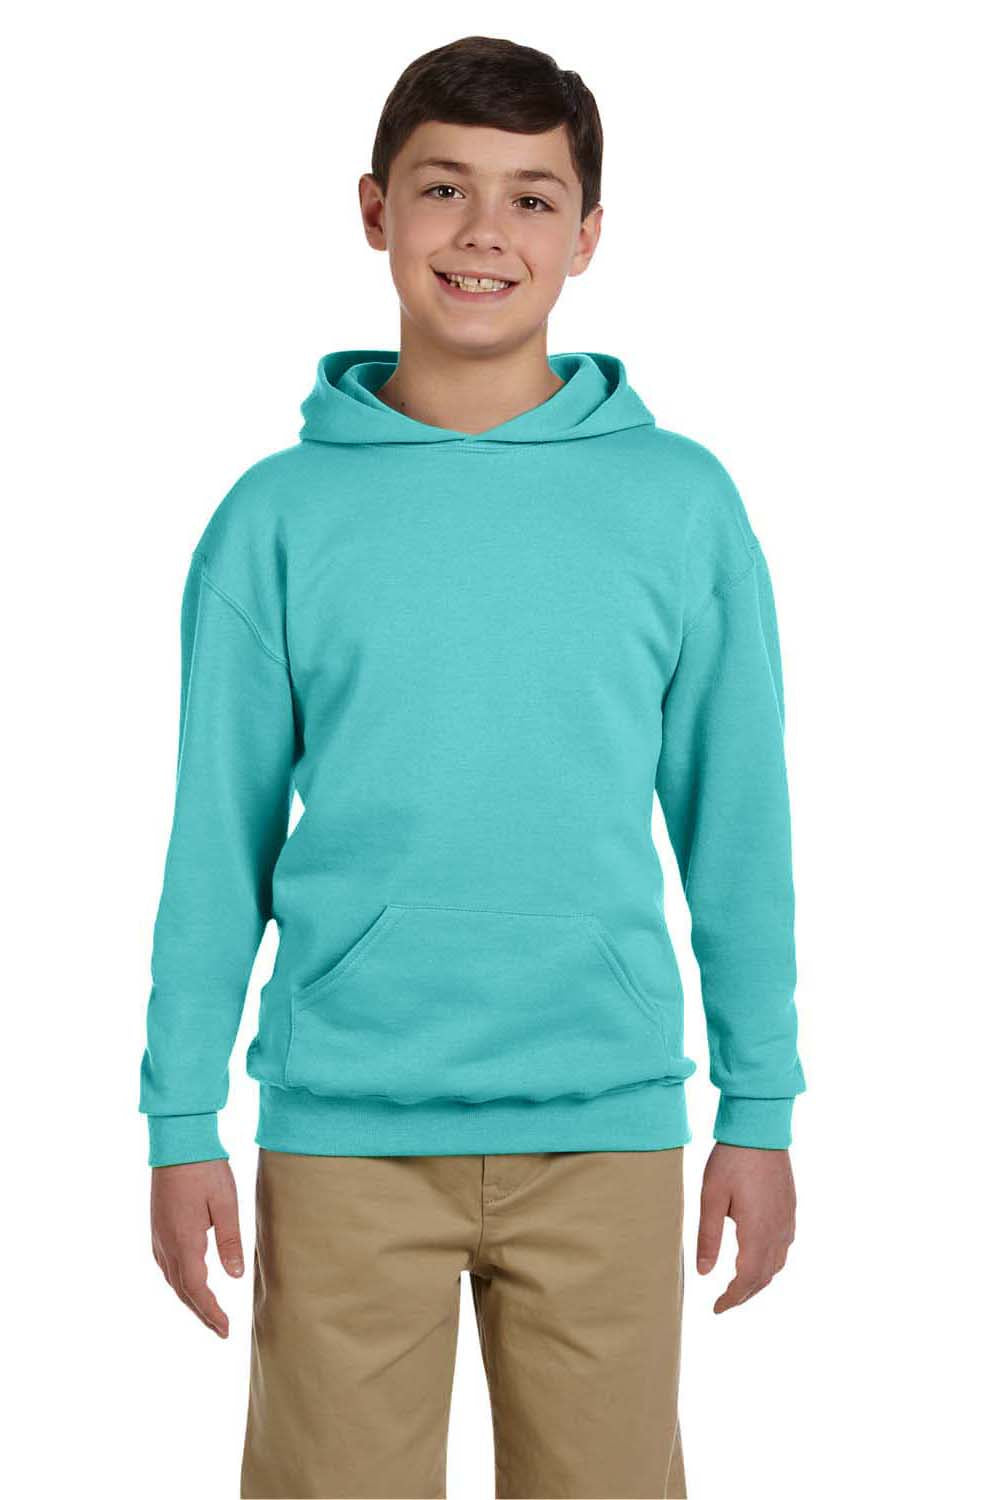 Jerzees 996Y Youth NuBlend Fleece Hooded Sweatshirt Hoodie Scuba Blue Front